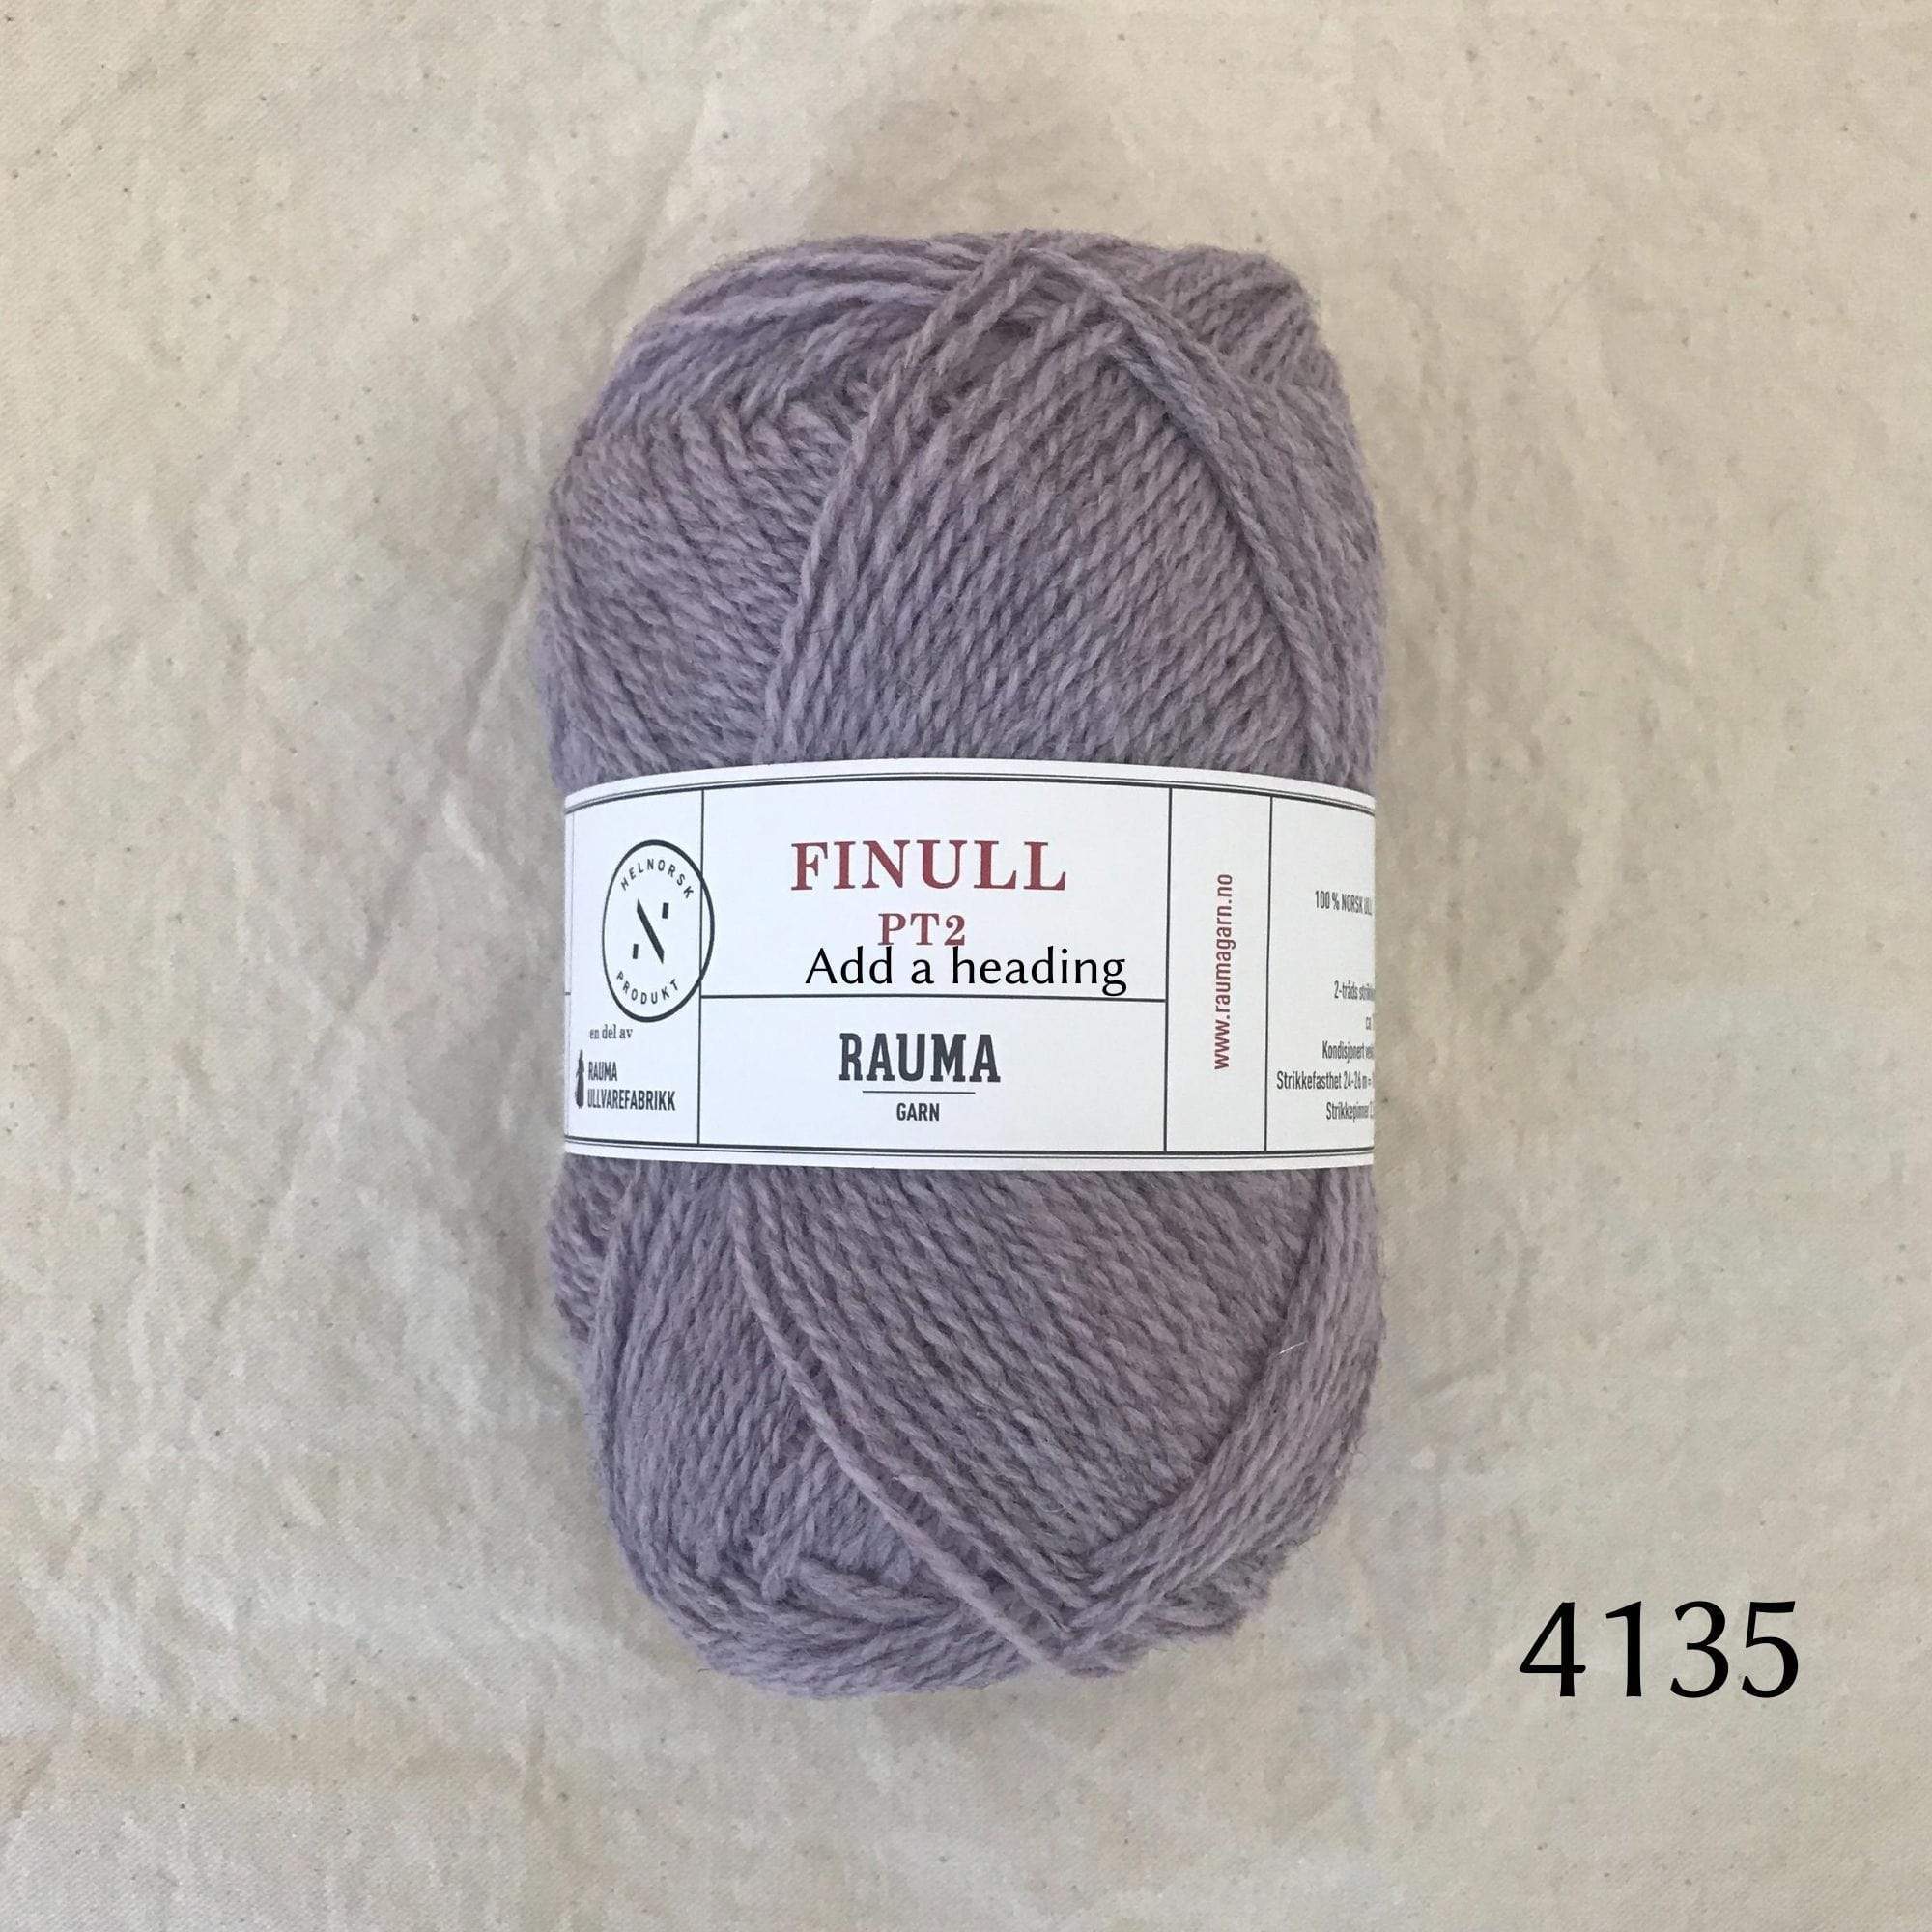 Rauma Finullgarn 4135 Heather Lavendar, lavendar dyed on a gray base